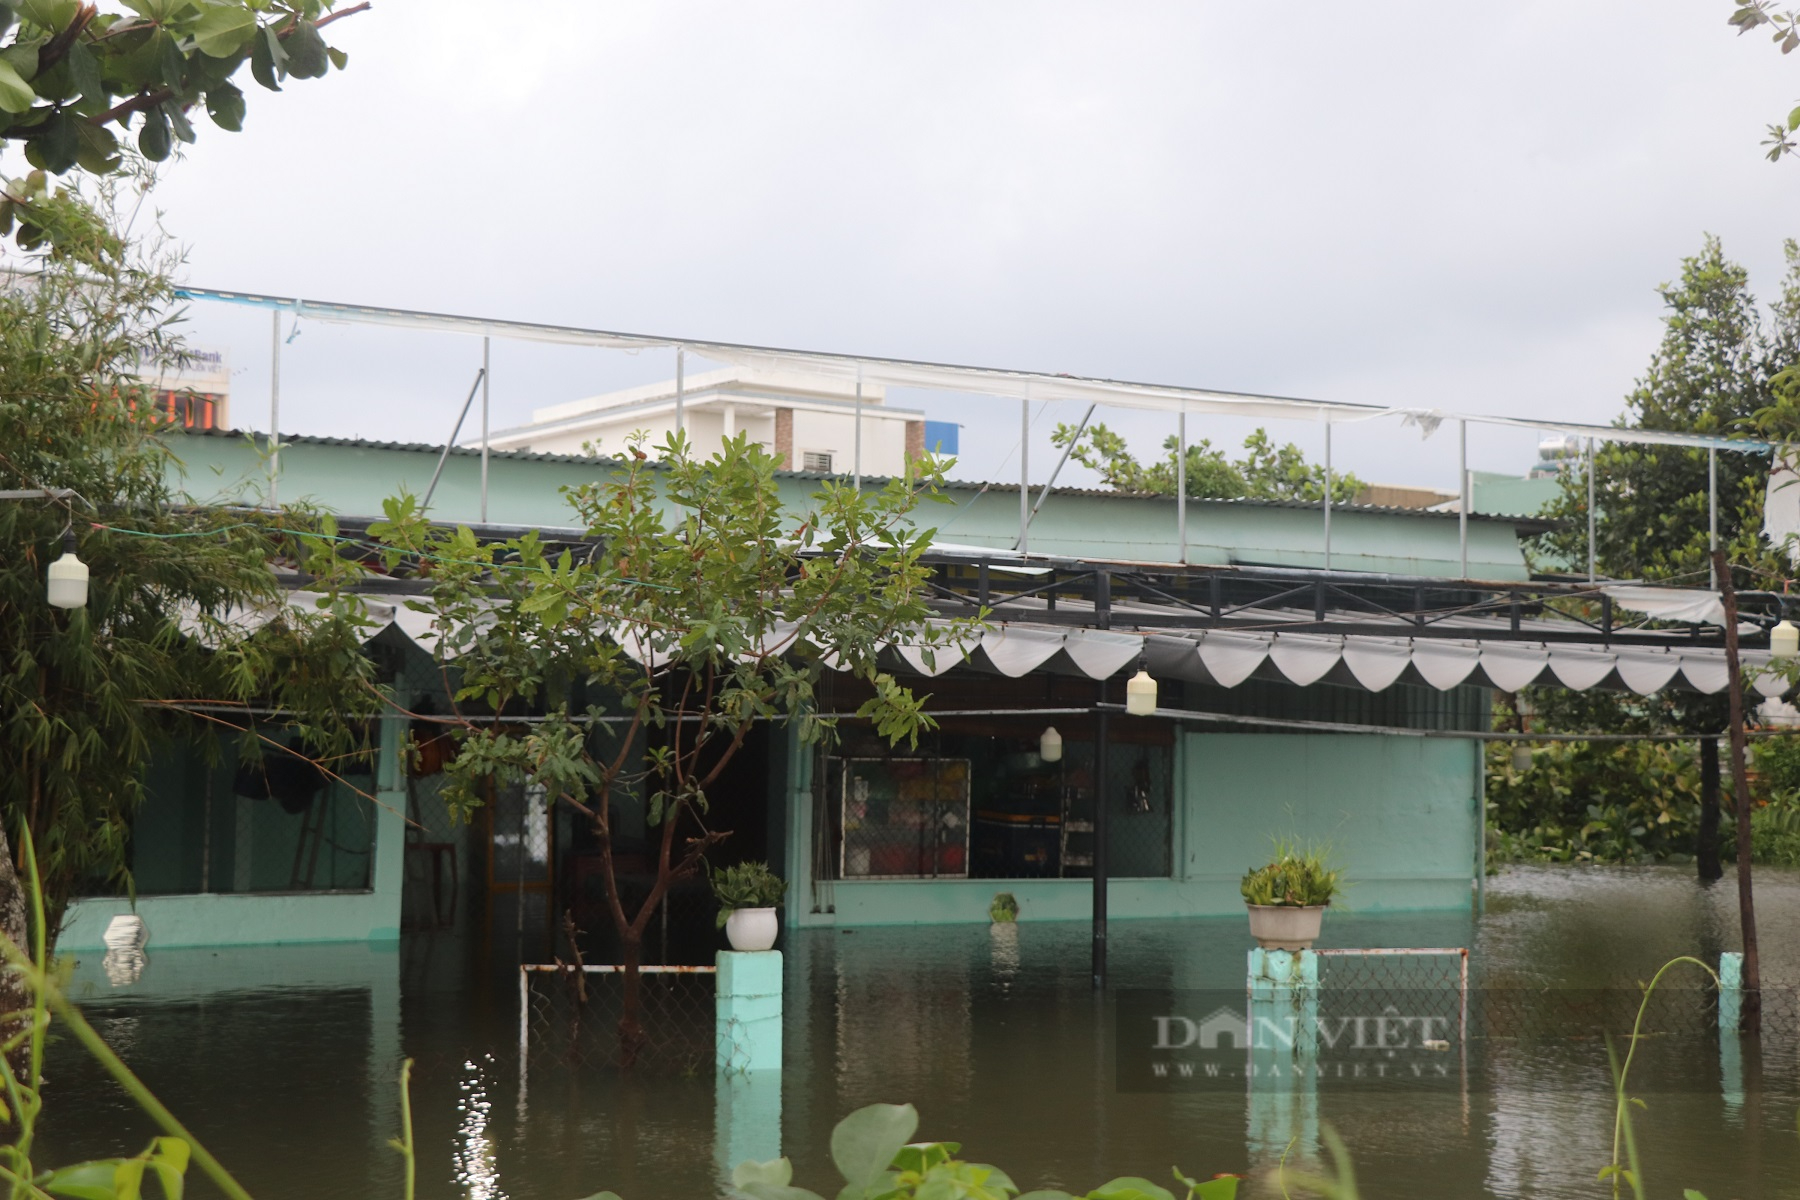 Quảng Nam: Người dân dùng ghe, thuyền di chuyển giữa phố mùa lũ lụt - Ảnh 1.